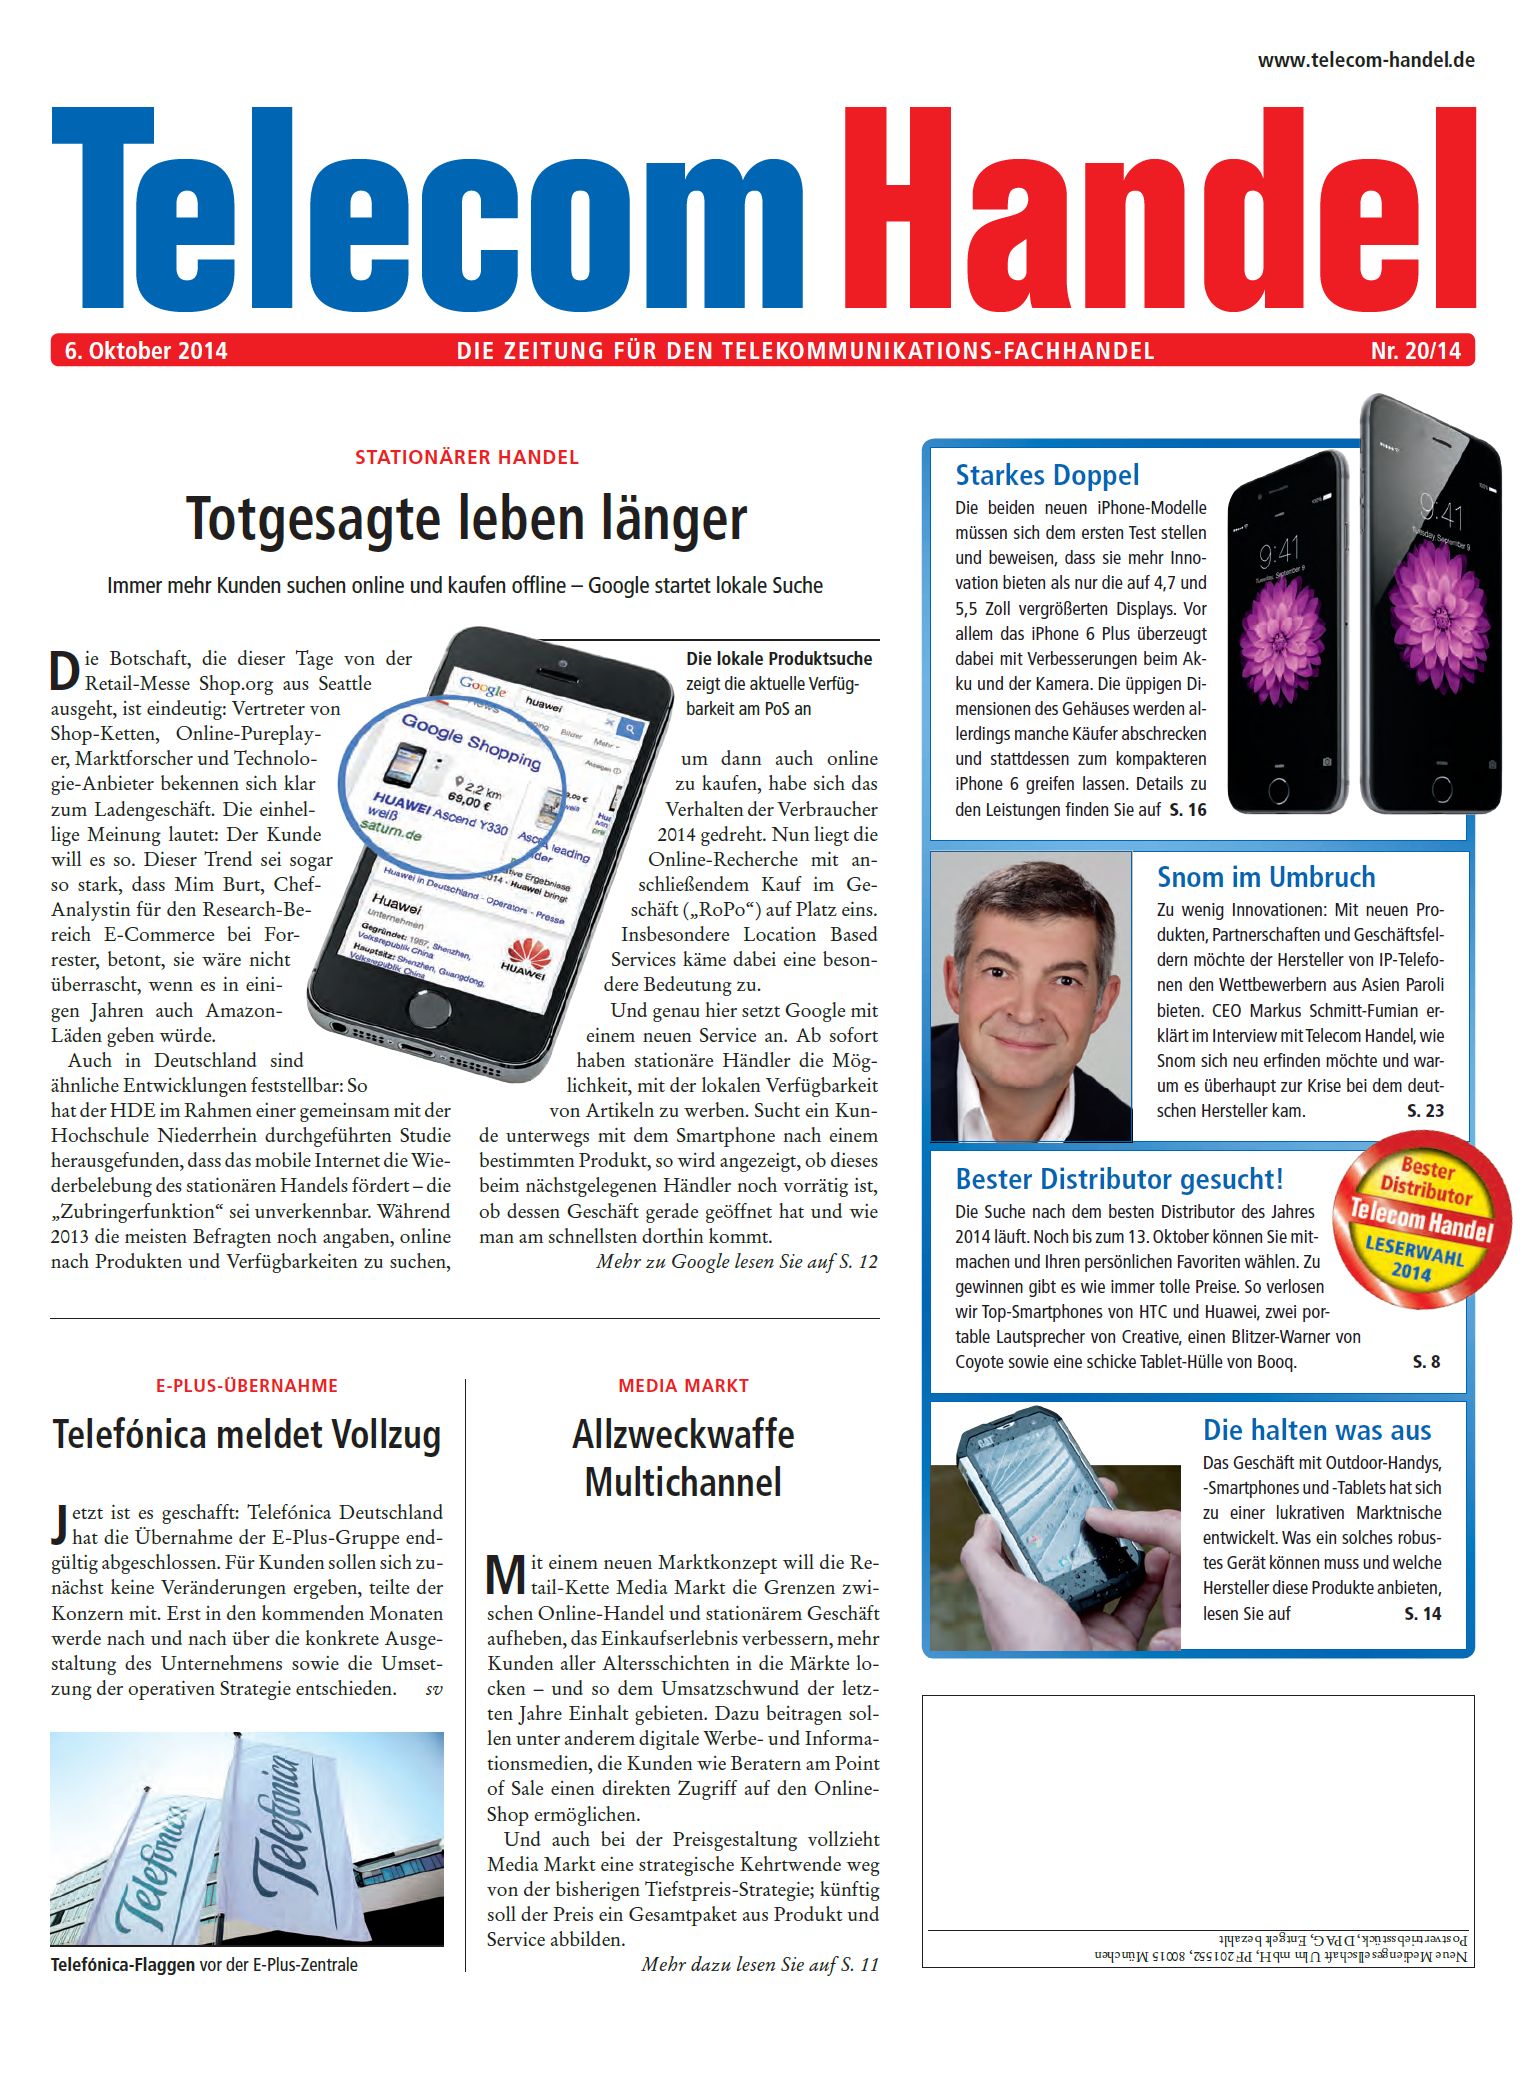 Telecom Handel Ausgabe 20/2014